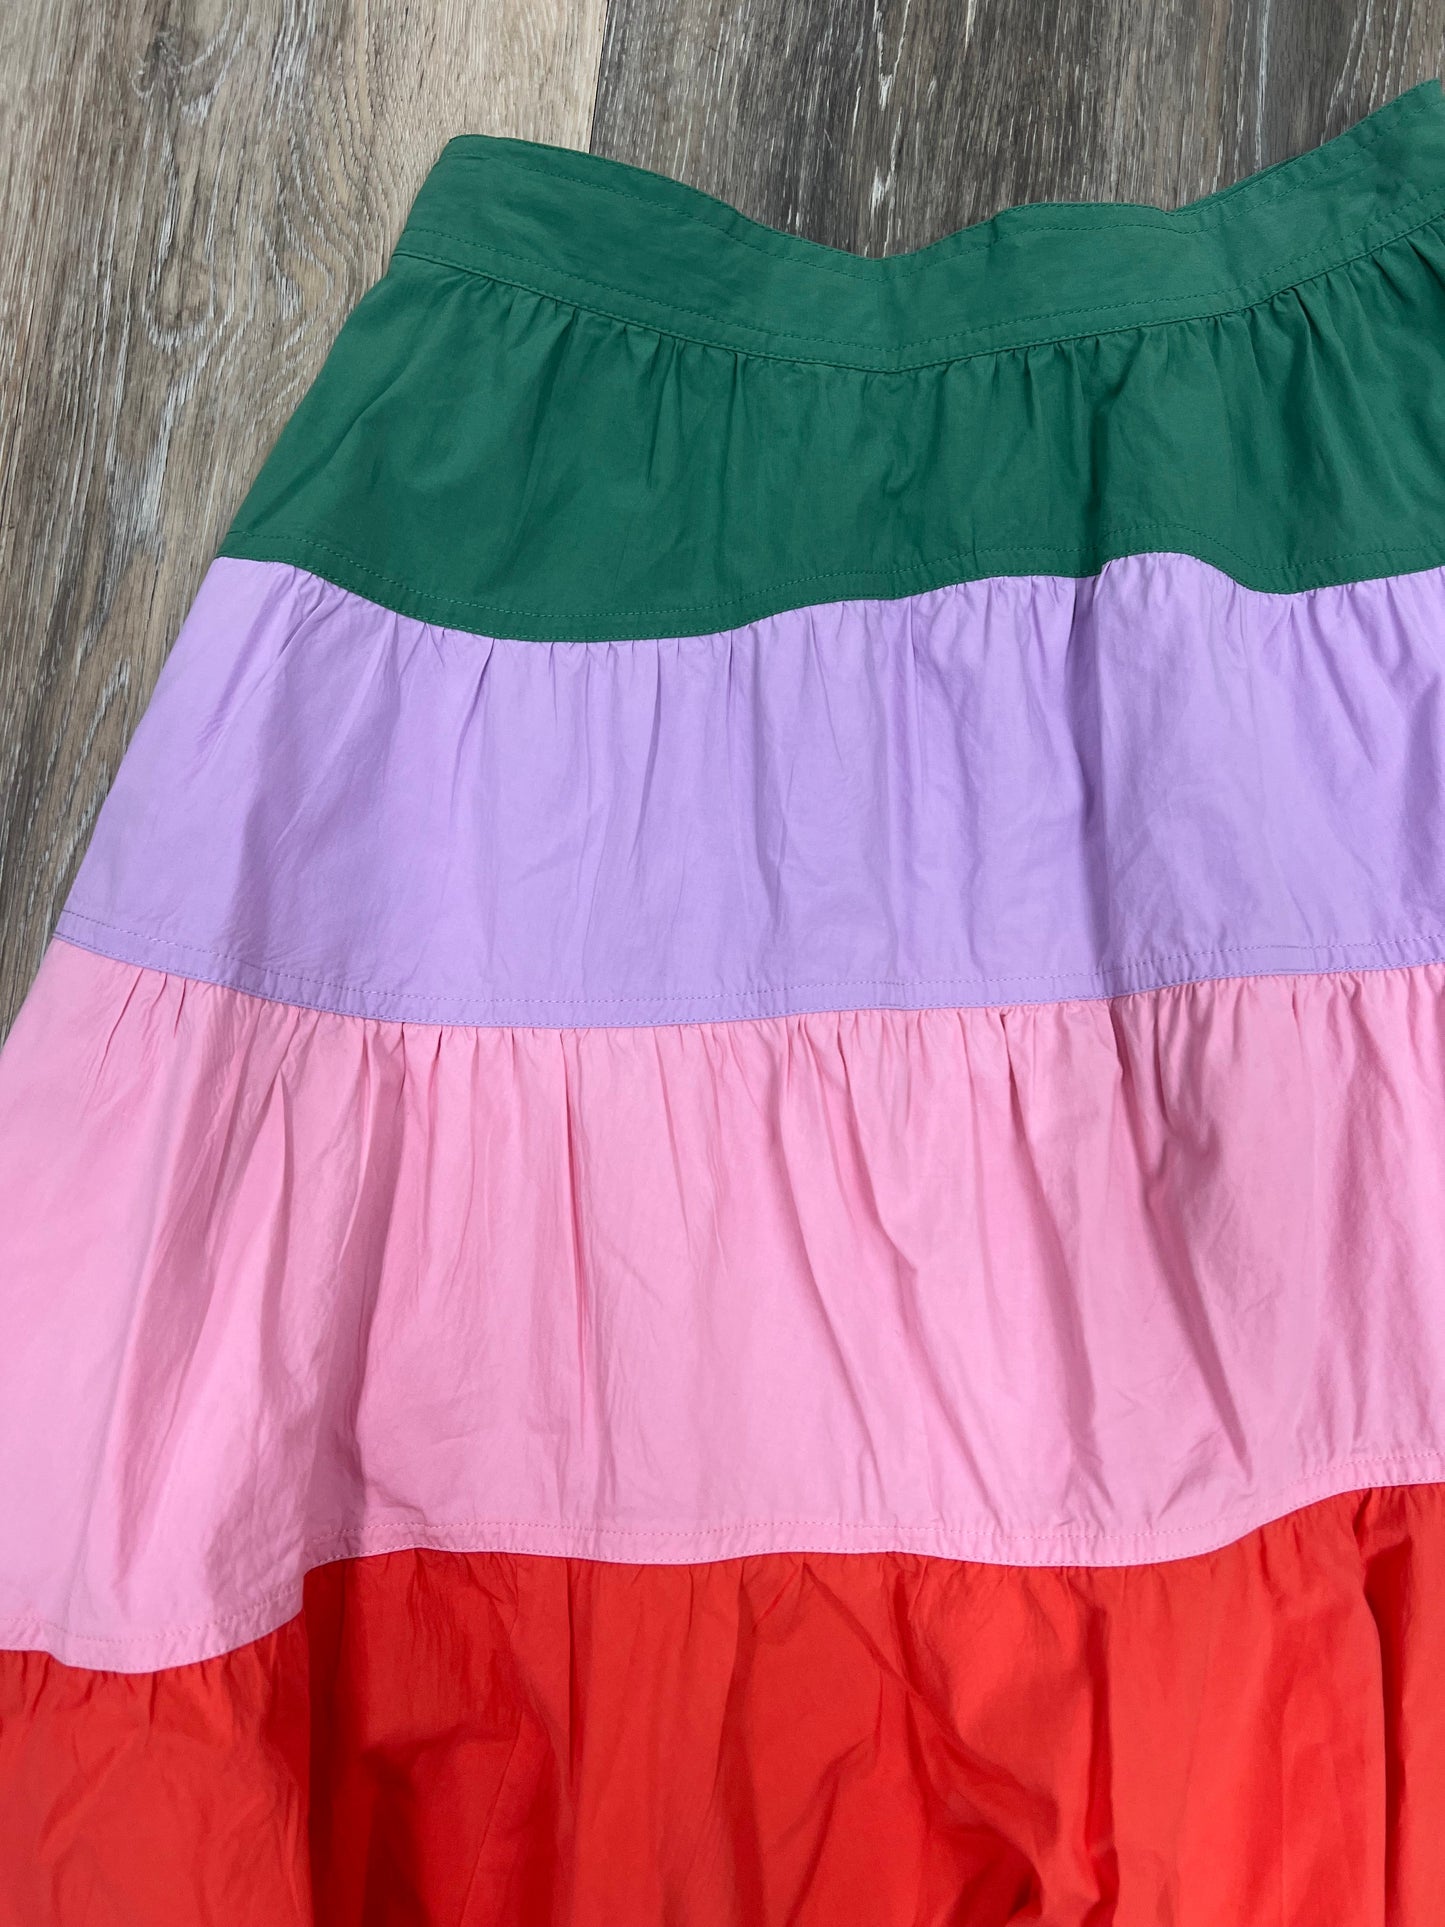 Skirt Designer By Derek Lam  Size: 4